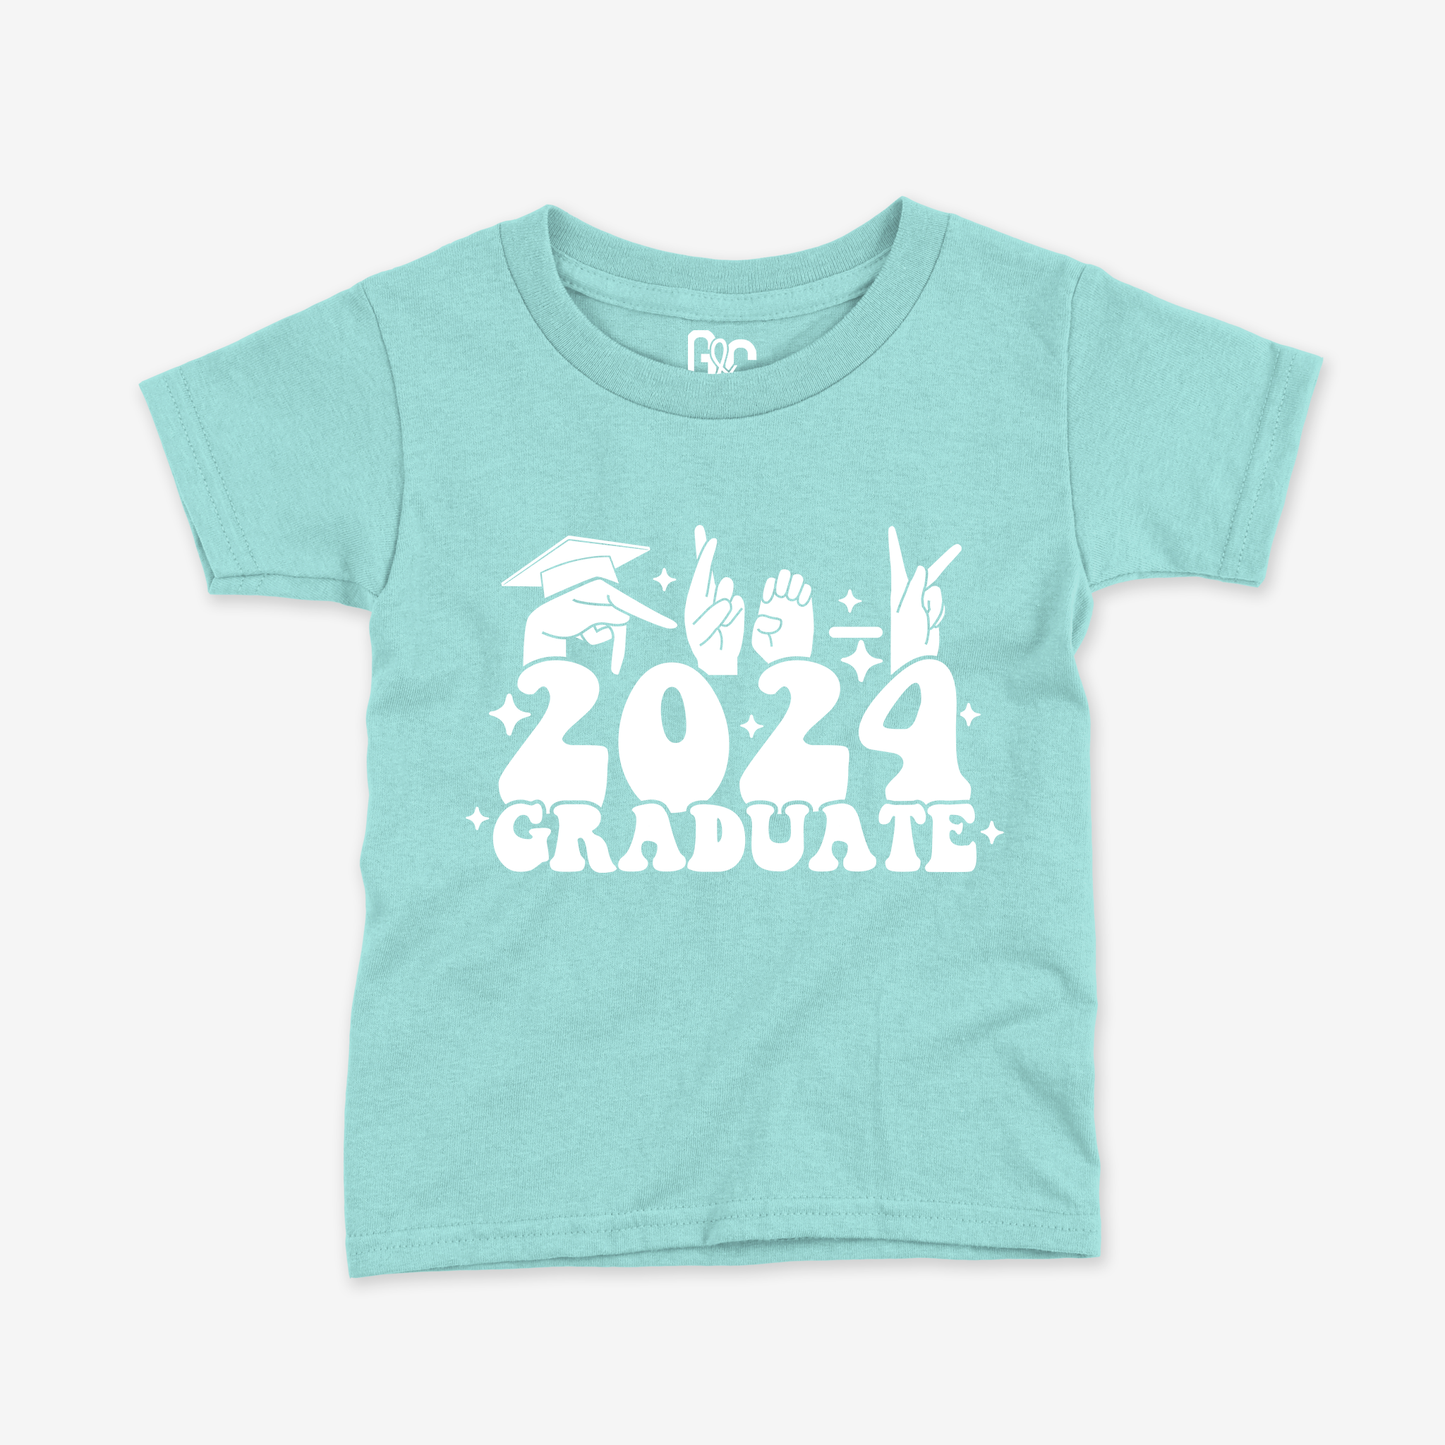 Pre-K 2024 Graduate Toddler Tee